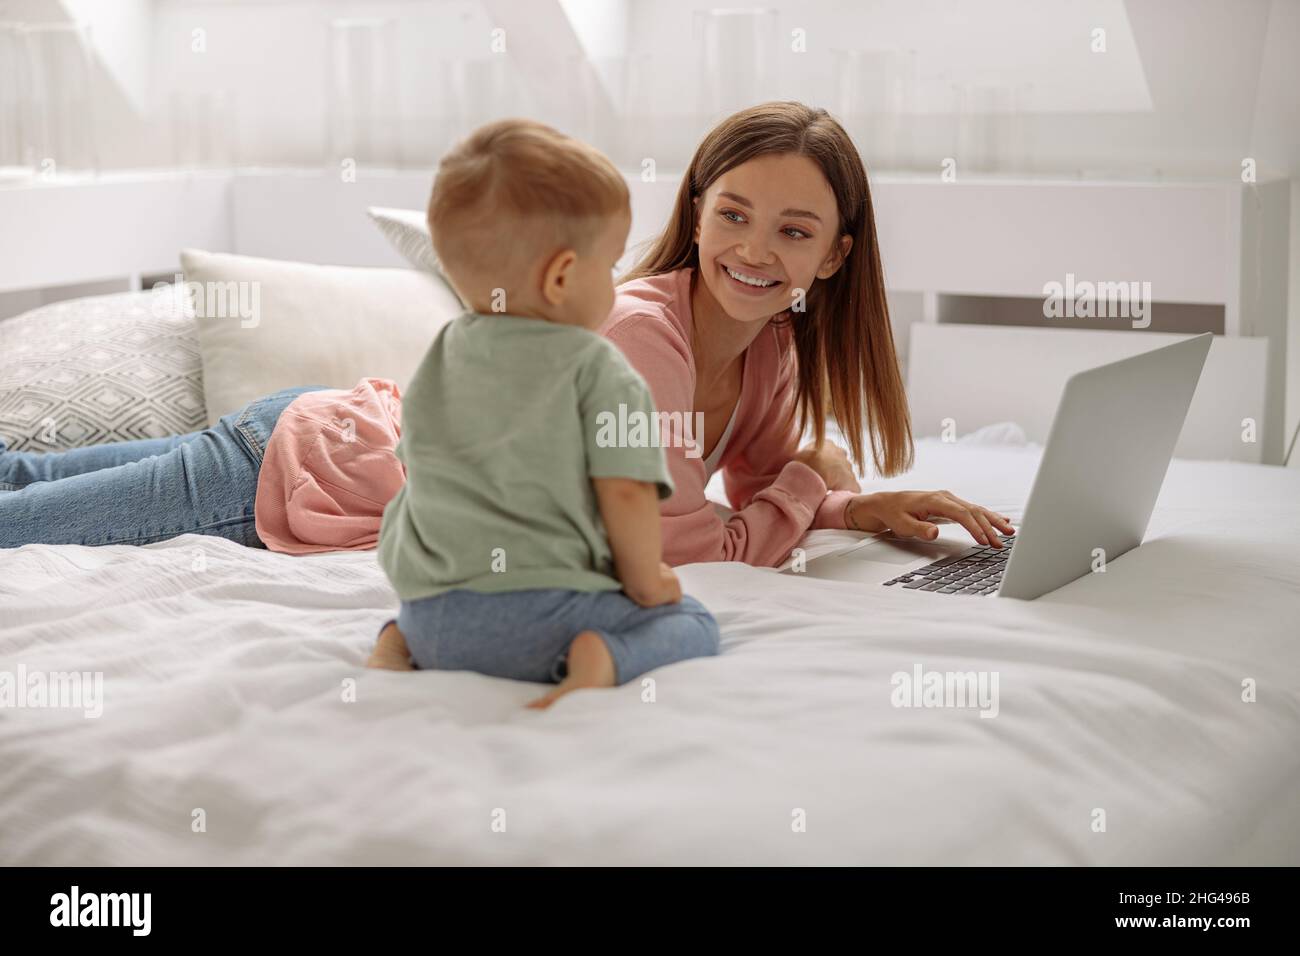 Glückliche Dame mit Laptop, während sie ihren kleinen Sohn ansieht Stockfoto